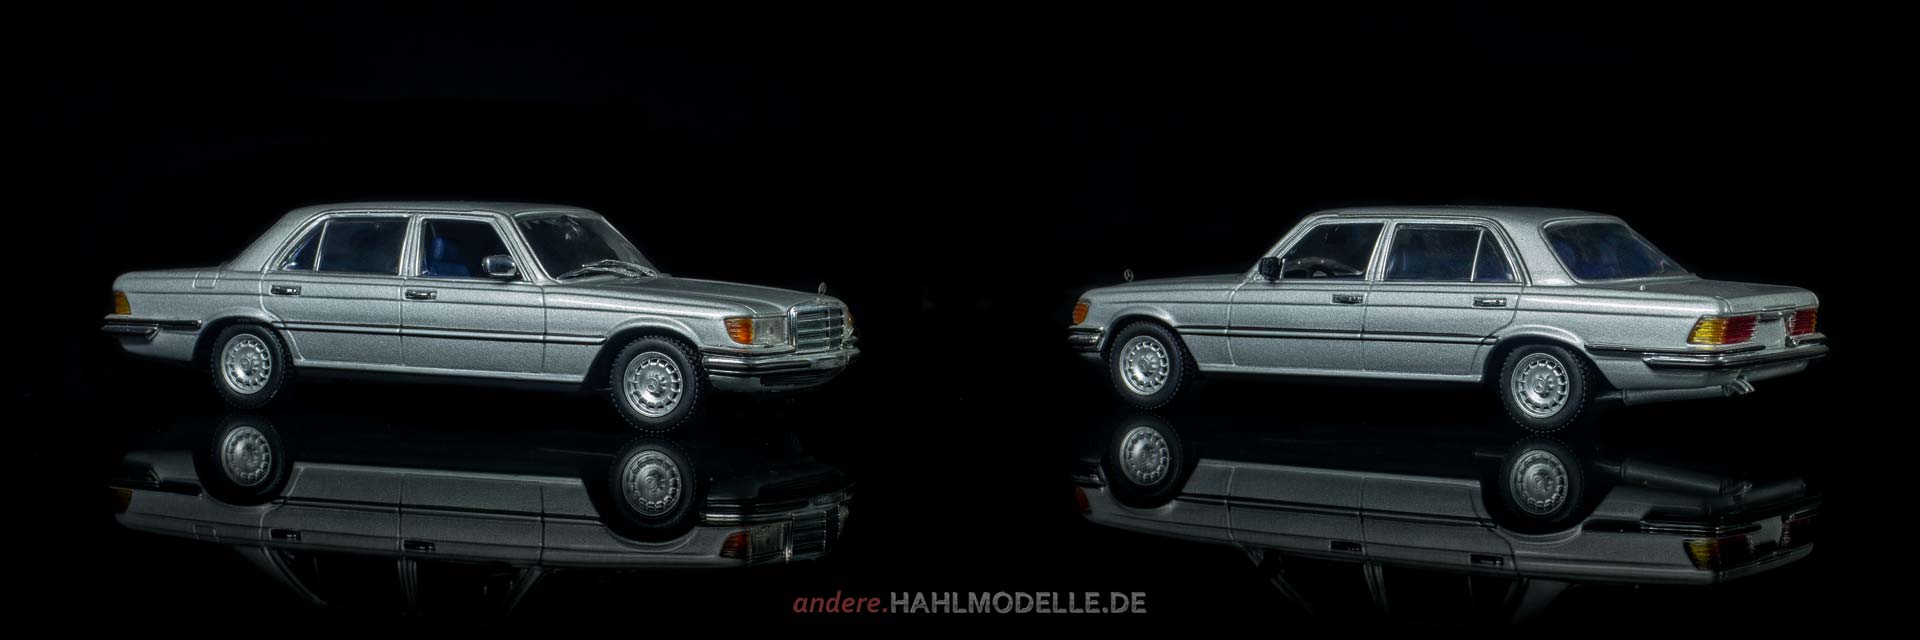 Mercedes-Benz 450 SEL 6.9 (V 116) | Limousine | Minichamps | www.andere.hahlmodelle.de